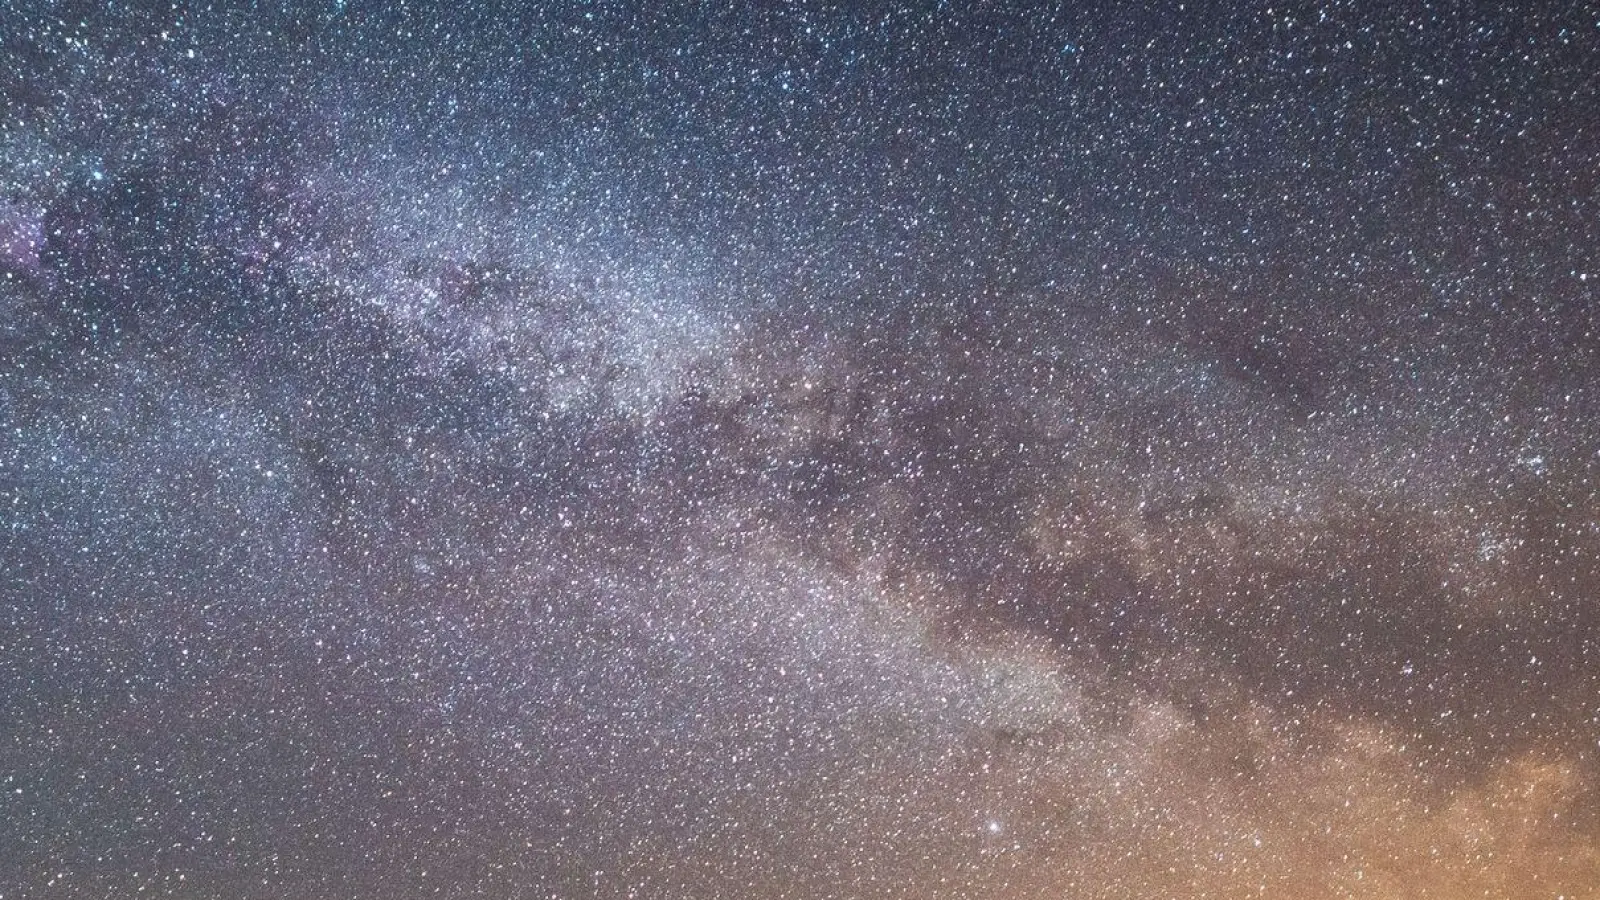 Der Sternenhimmel leuchtet über einem Rapsfeld. Laut Nasa könnte sich in den kommenden Monaten ein Himmelsspektakel ereignen - eine sogenannte Nova-Explosion. (Foto: Daniel Reinhardt/dpa)